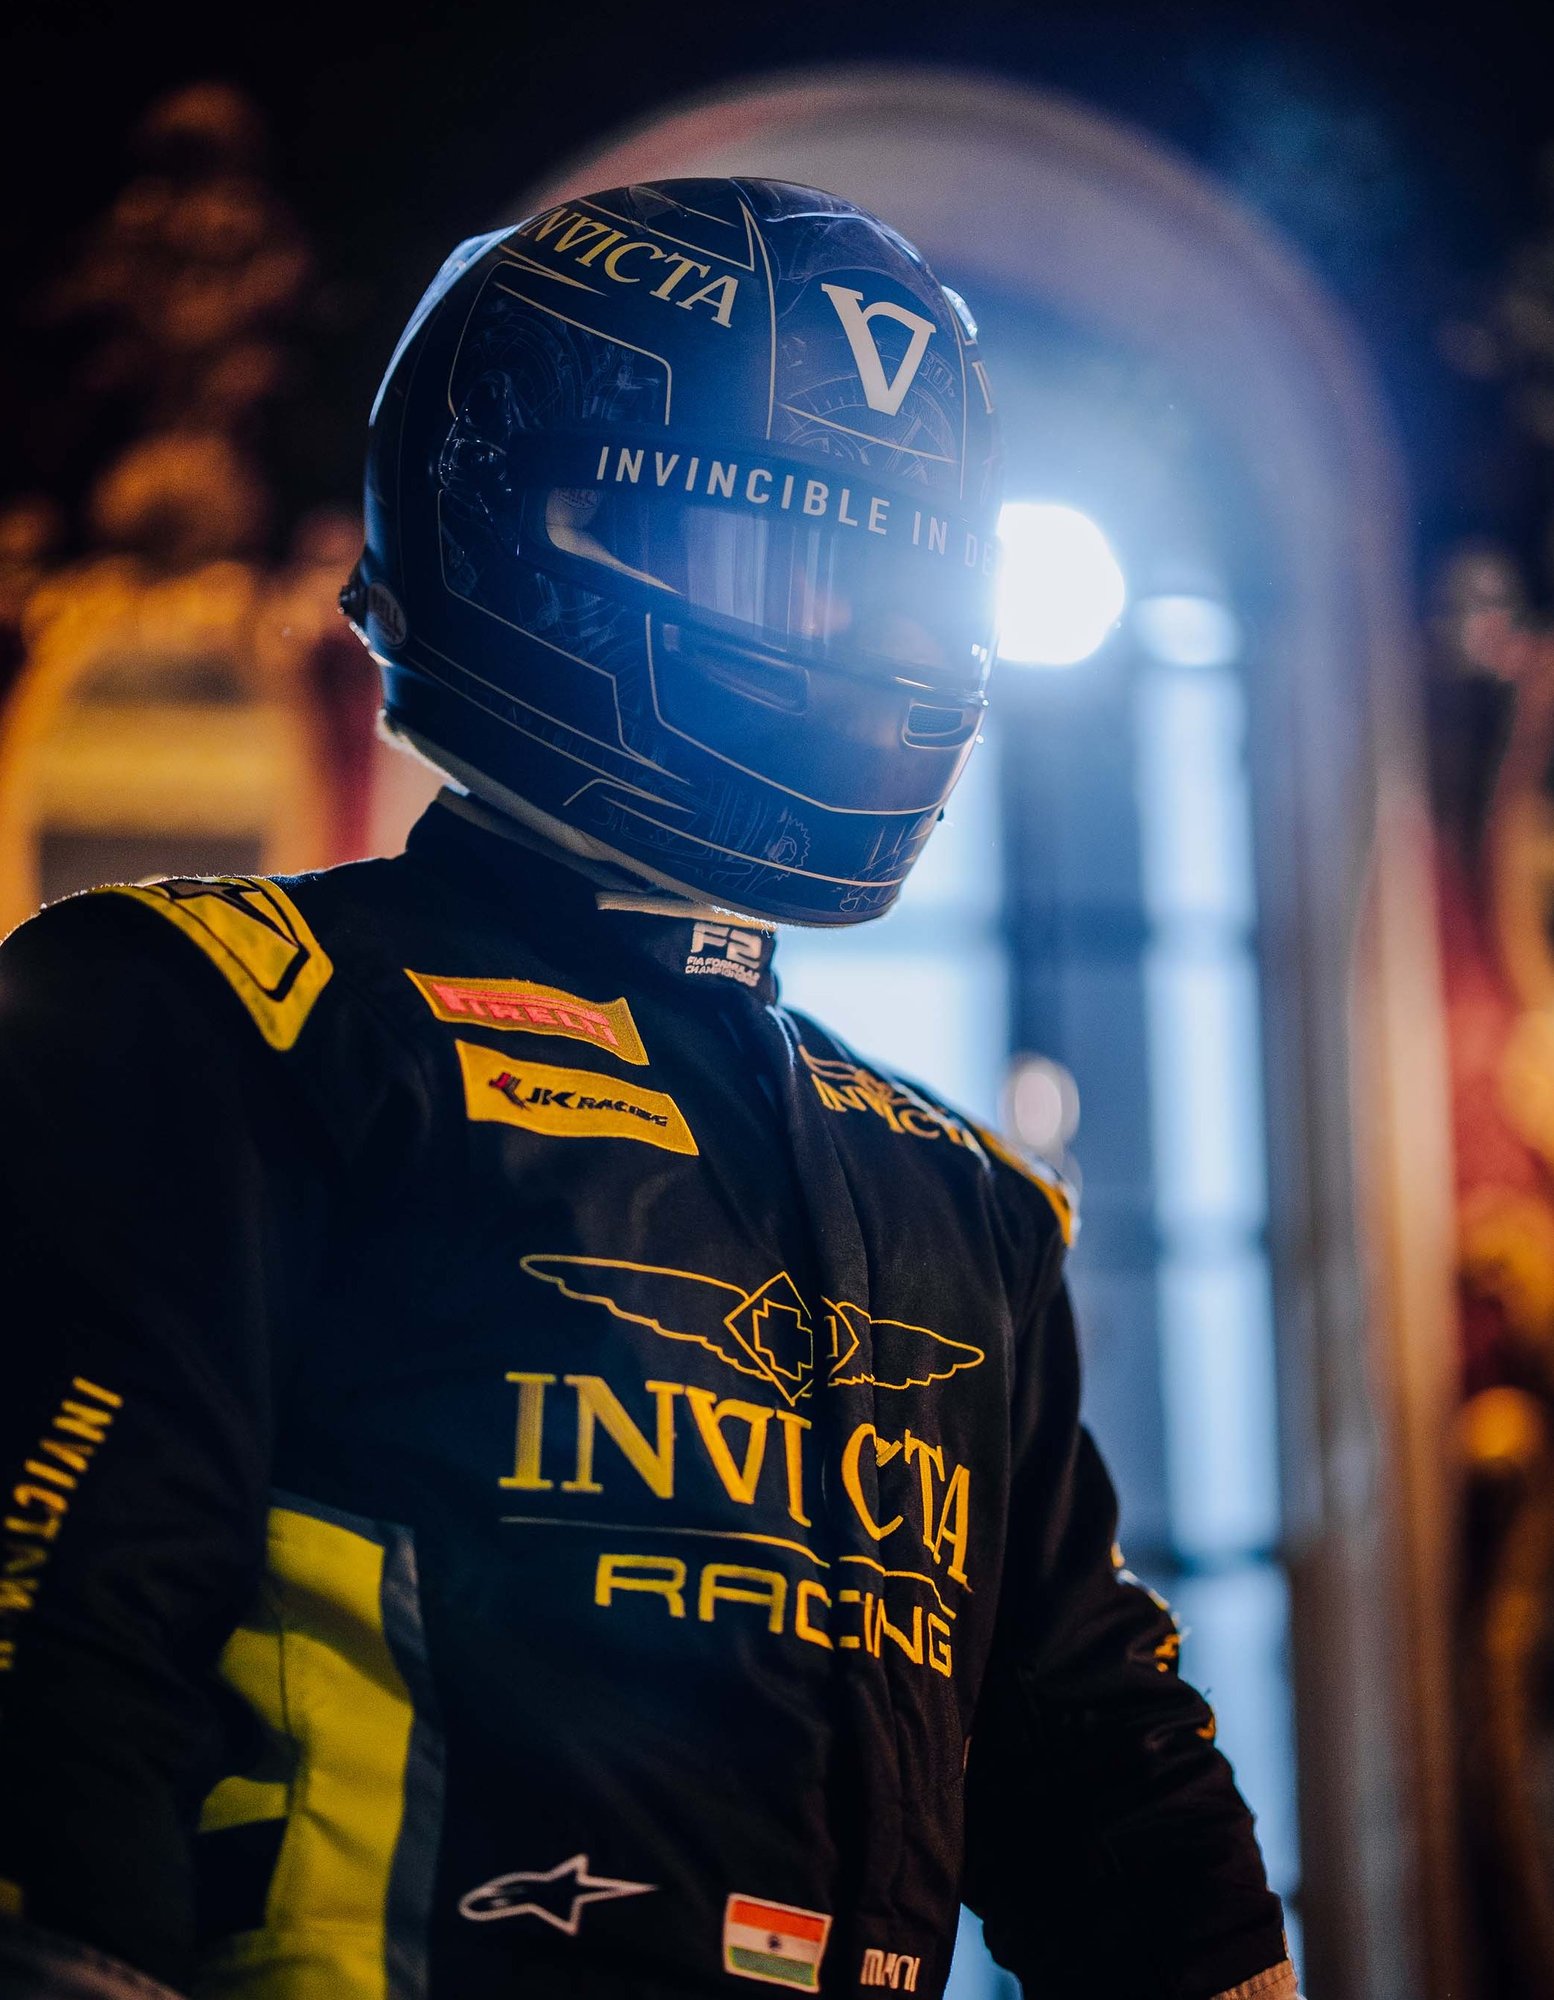 Invicta Racing coureur poseert met helm tijdens campagneshoot